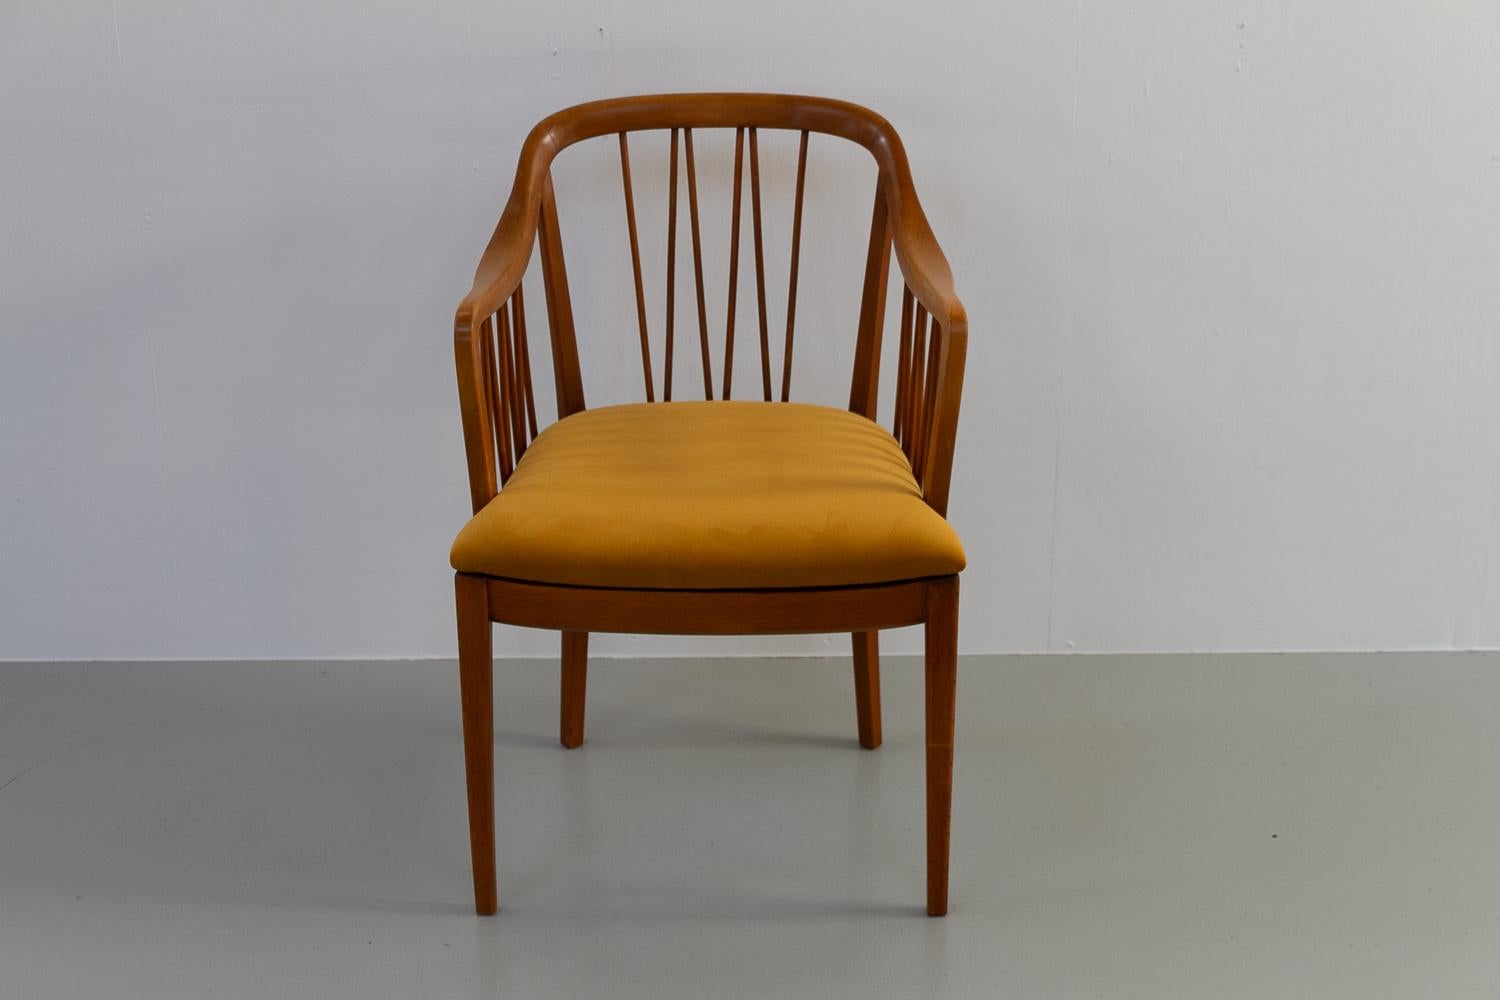 Fauteuil Art déco suédois, années 1940.

Elegant fauteuil scandinave Art déco en hêtre teinté et laqué avec dossier incurvé. L'assise a été récemment recouverte d'un tissu en velours doré.
Fabriquée en Suède par un fabricant inconnu mais présentant